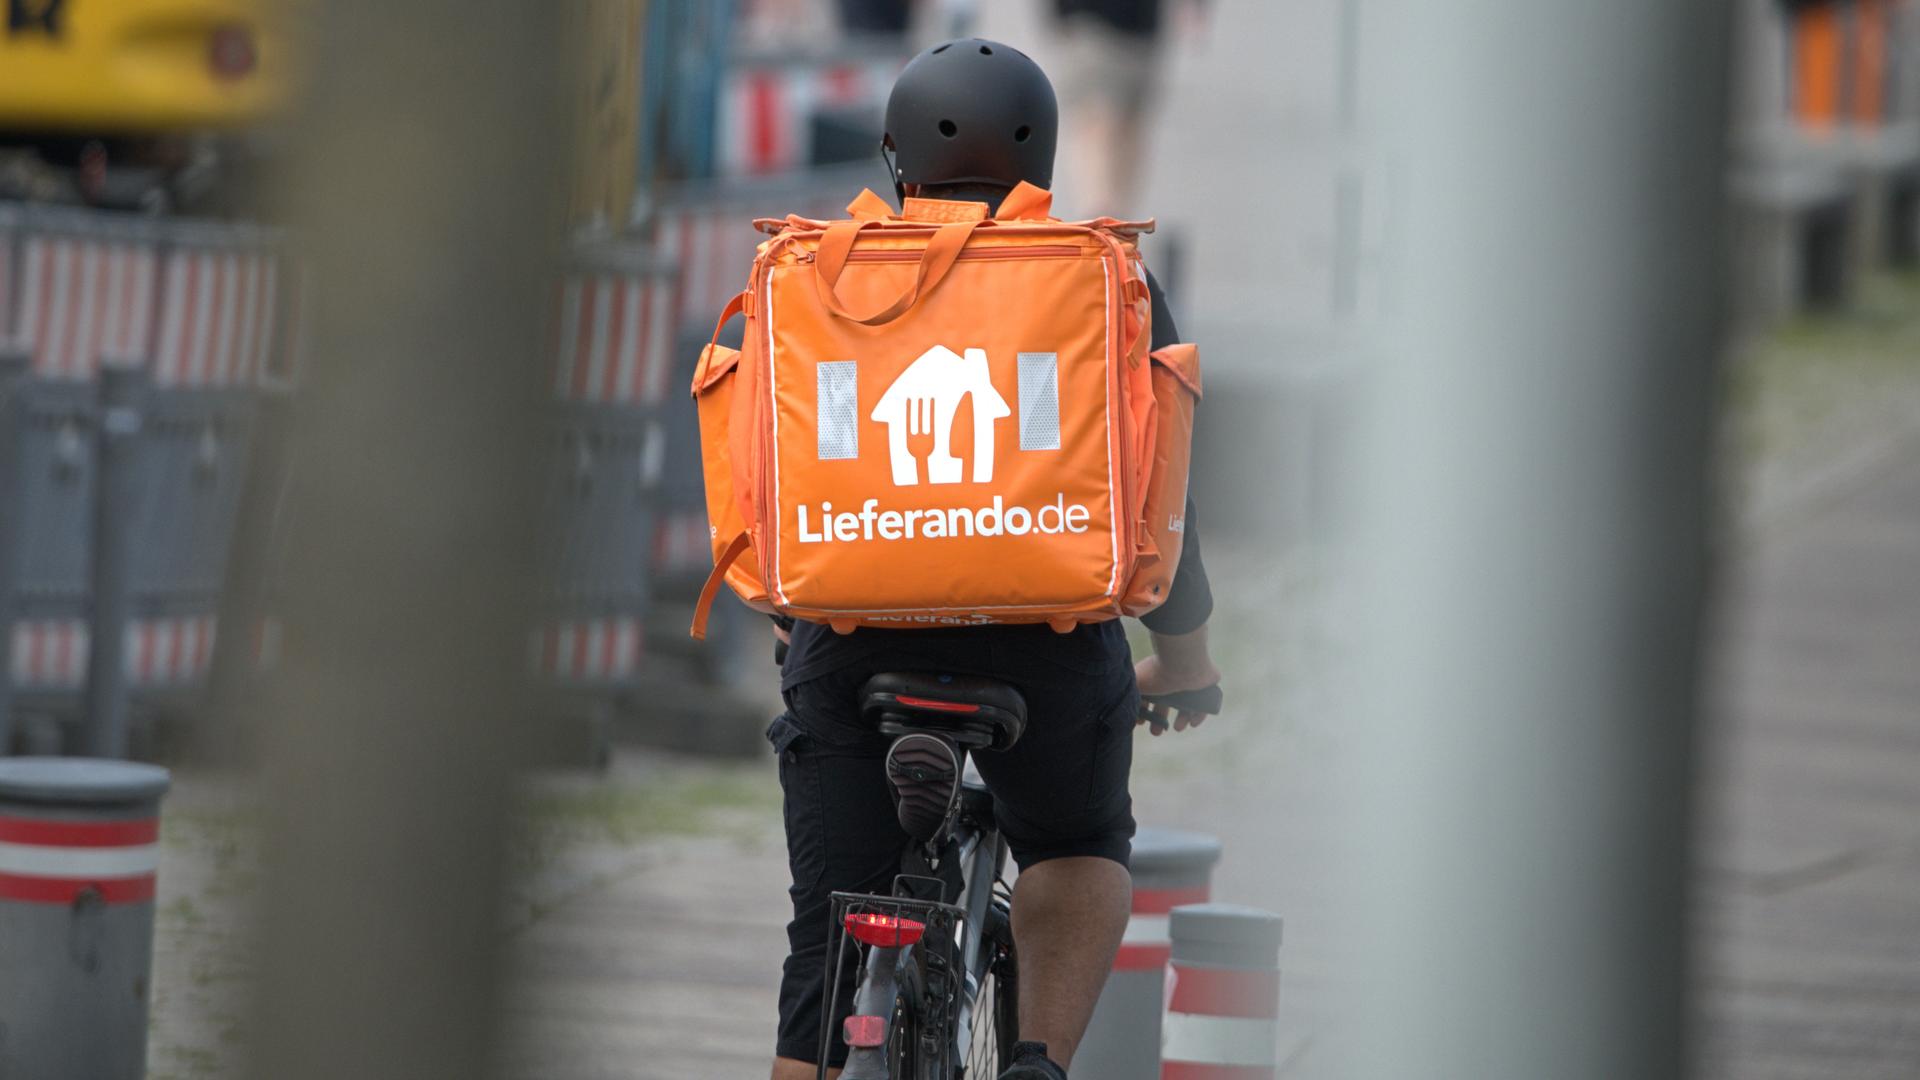 Ein Fahrradkurier des Fastfood-Lieferdienstes Lieferando.de mit Helm im Einsatz. Mit einem großen, orangefarbenen Thermo-Rucksack werden die bestellten Speisen per Fahrrad ausgeliefert.